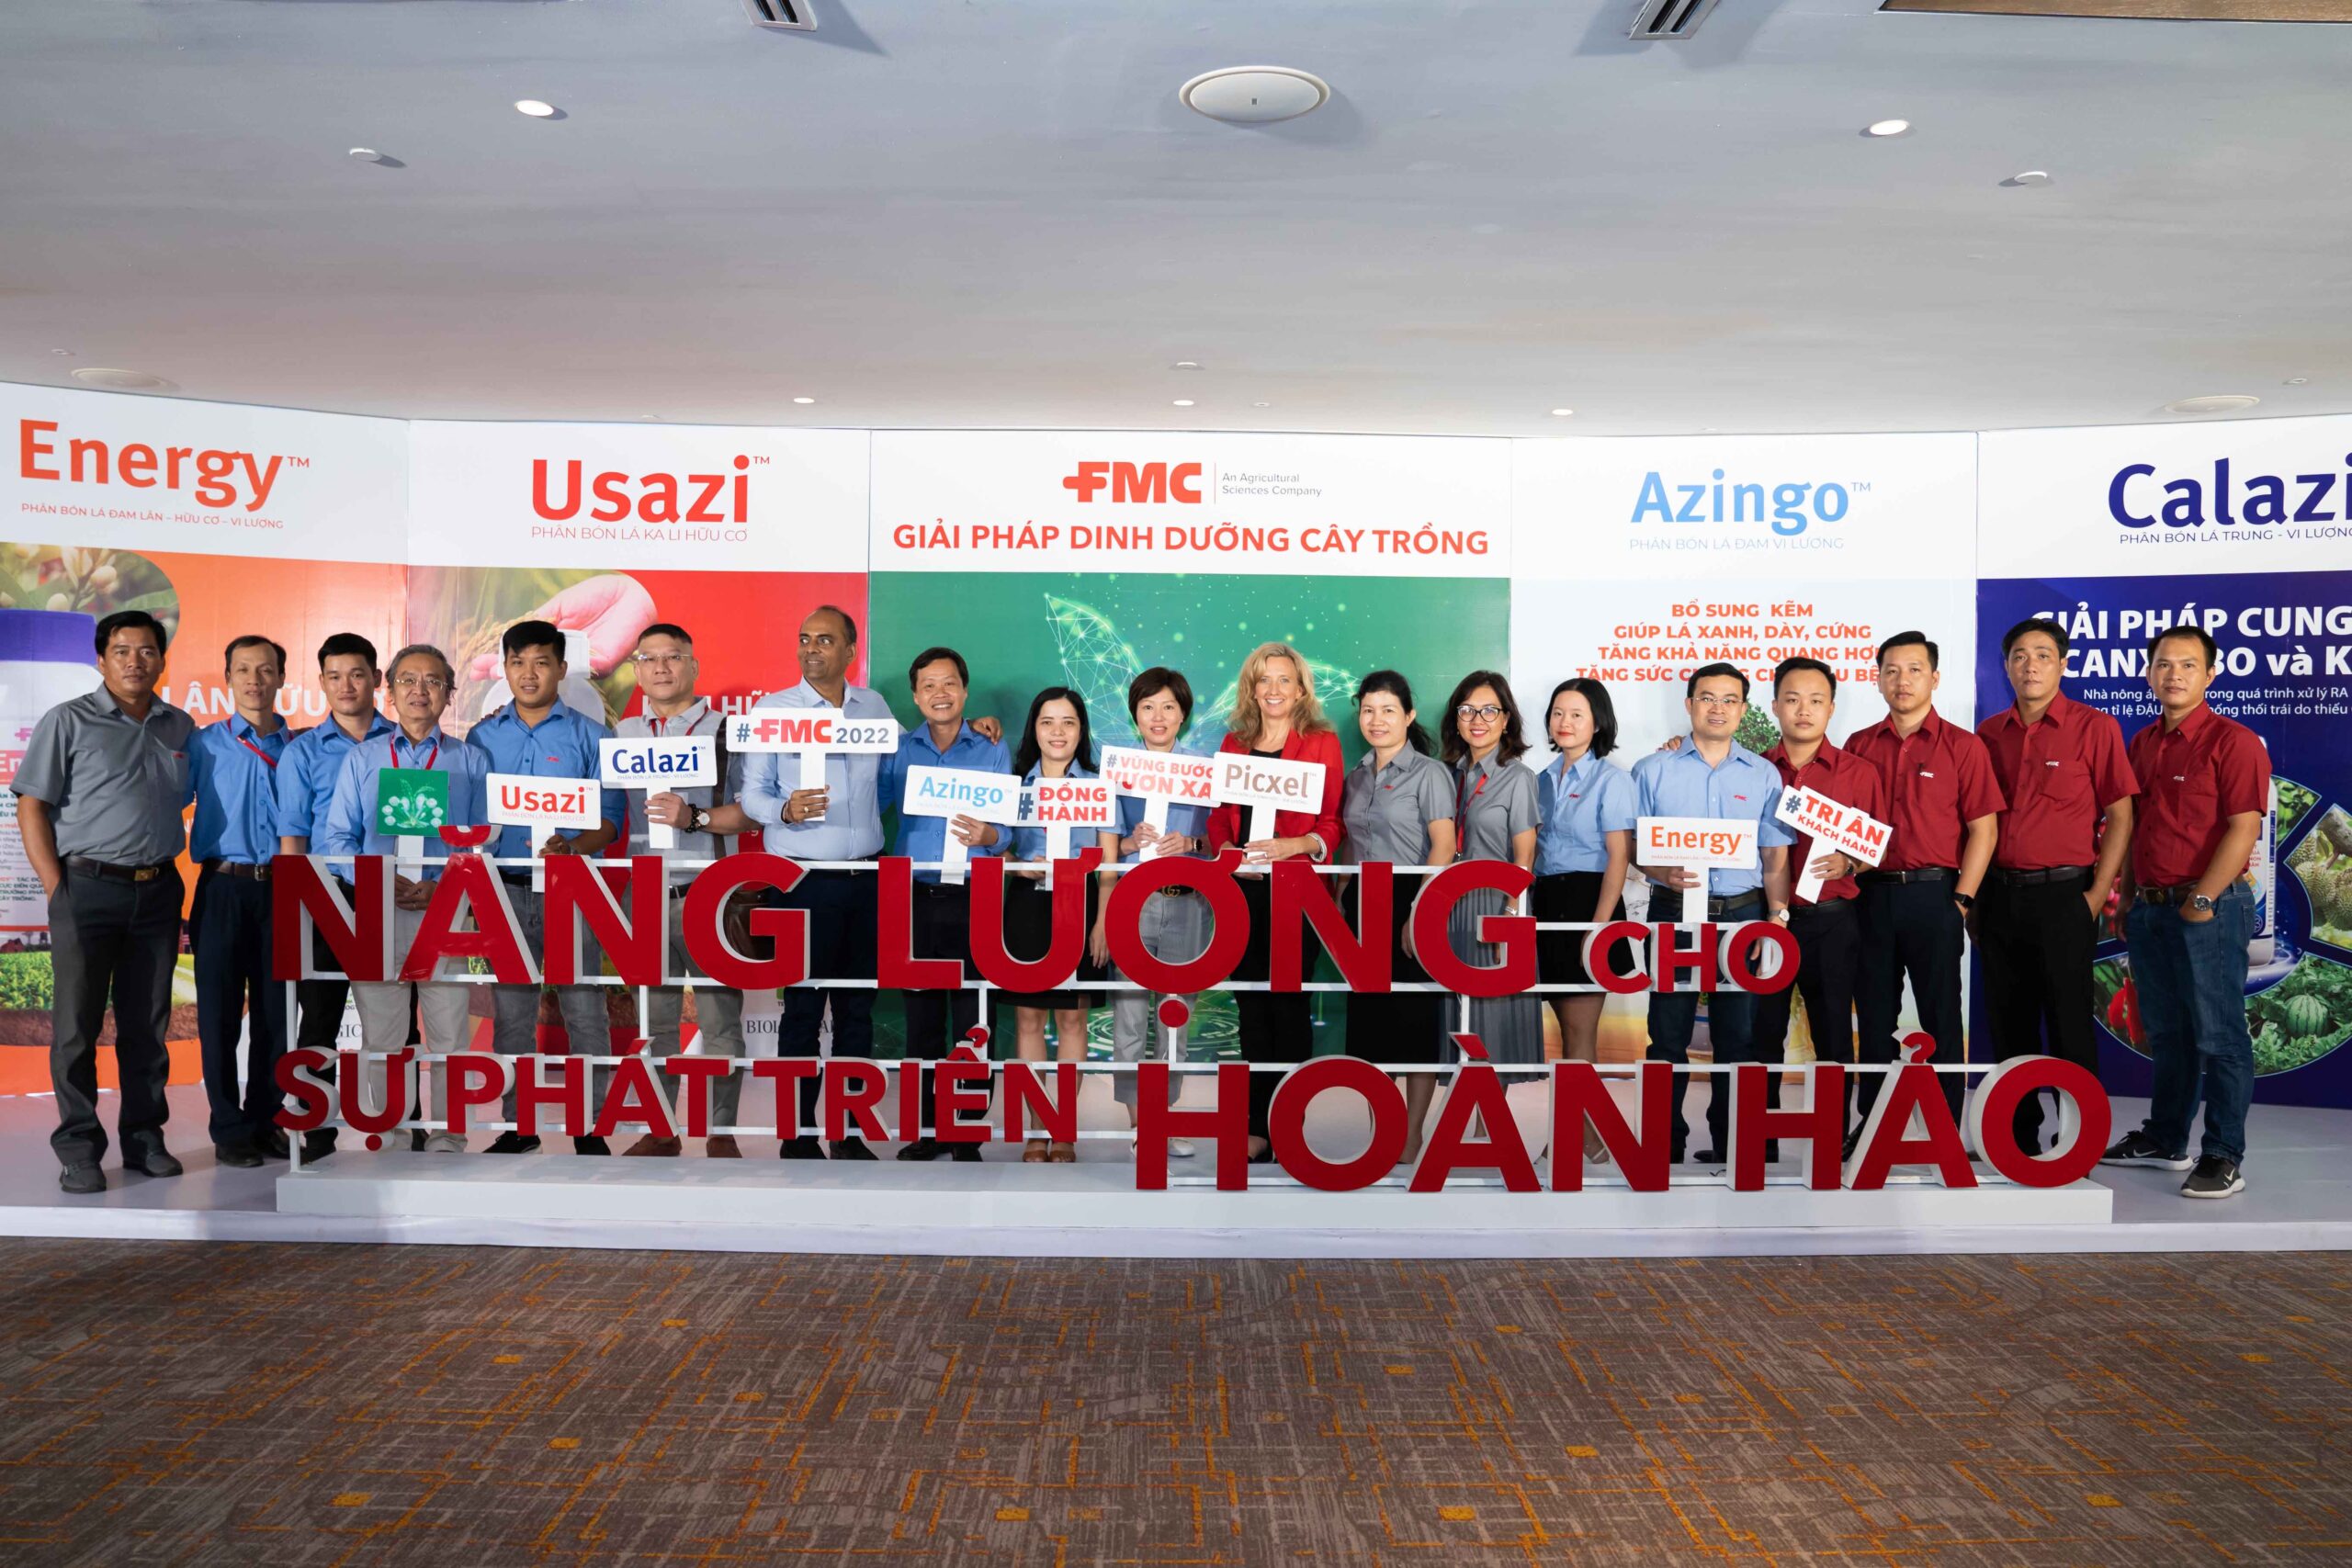 Sự kiện FMC Việt Nam được tổ chức tại khách sạn 5 sao